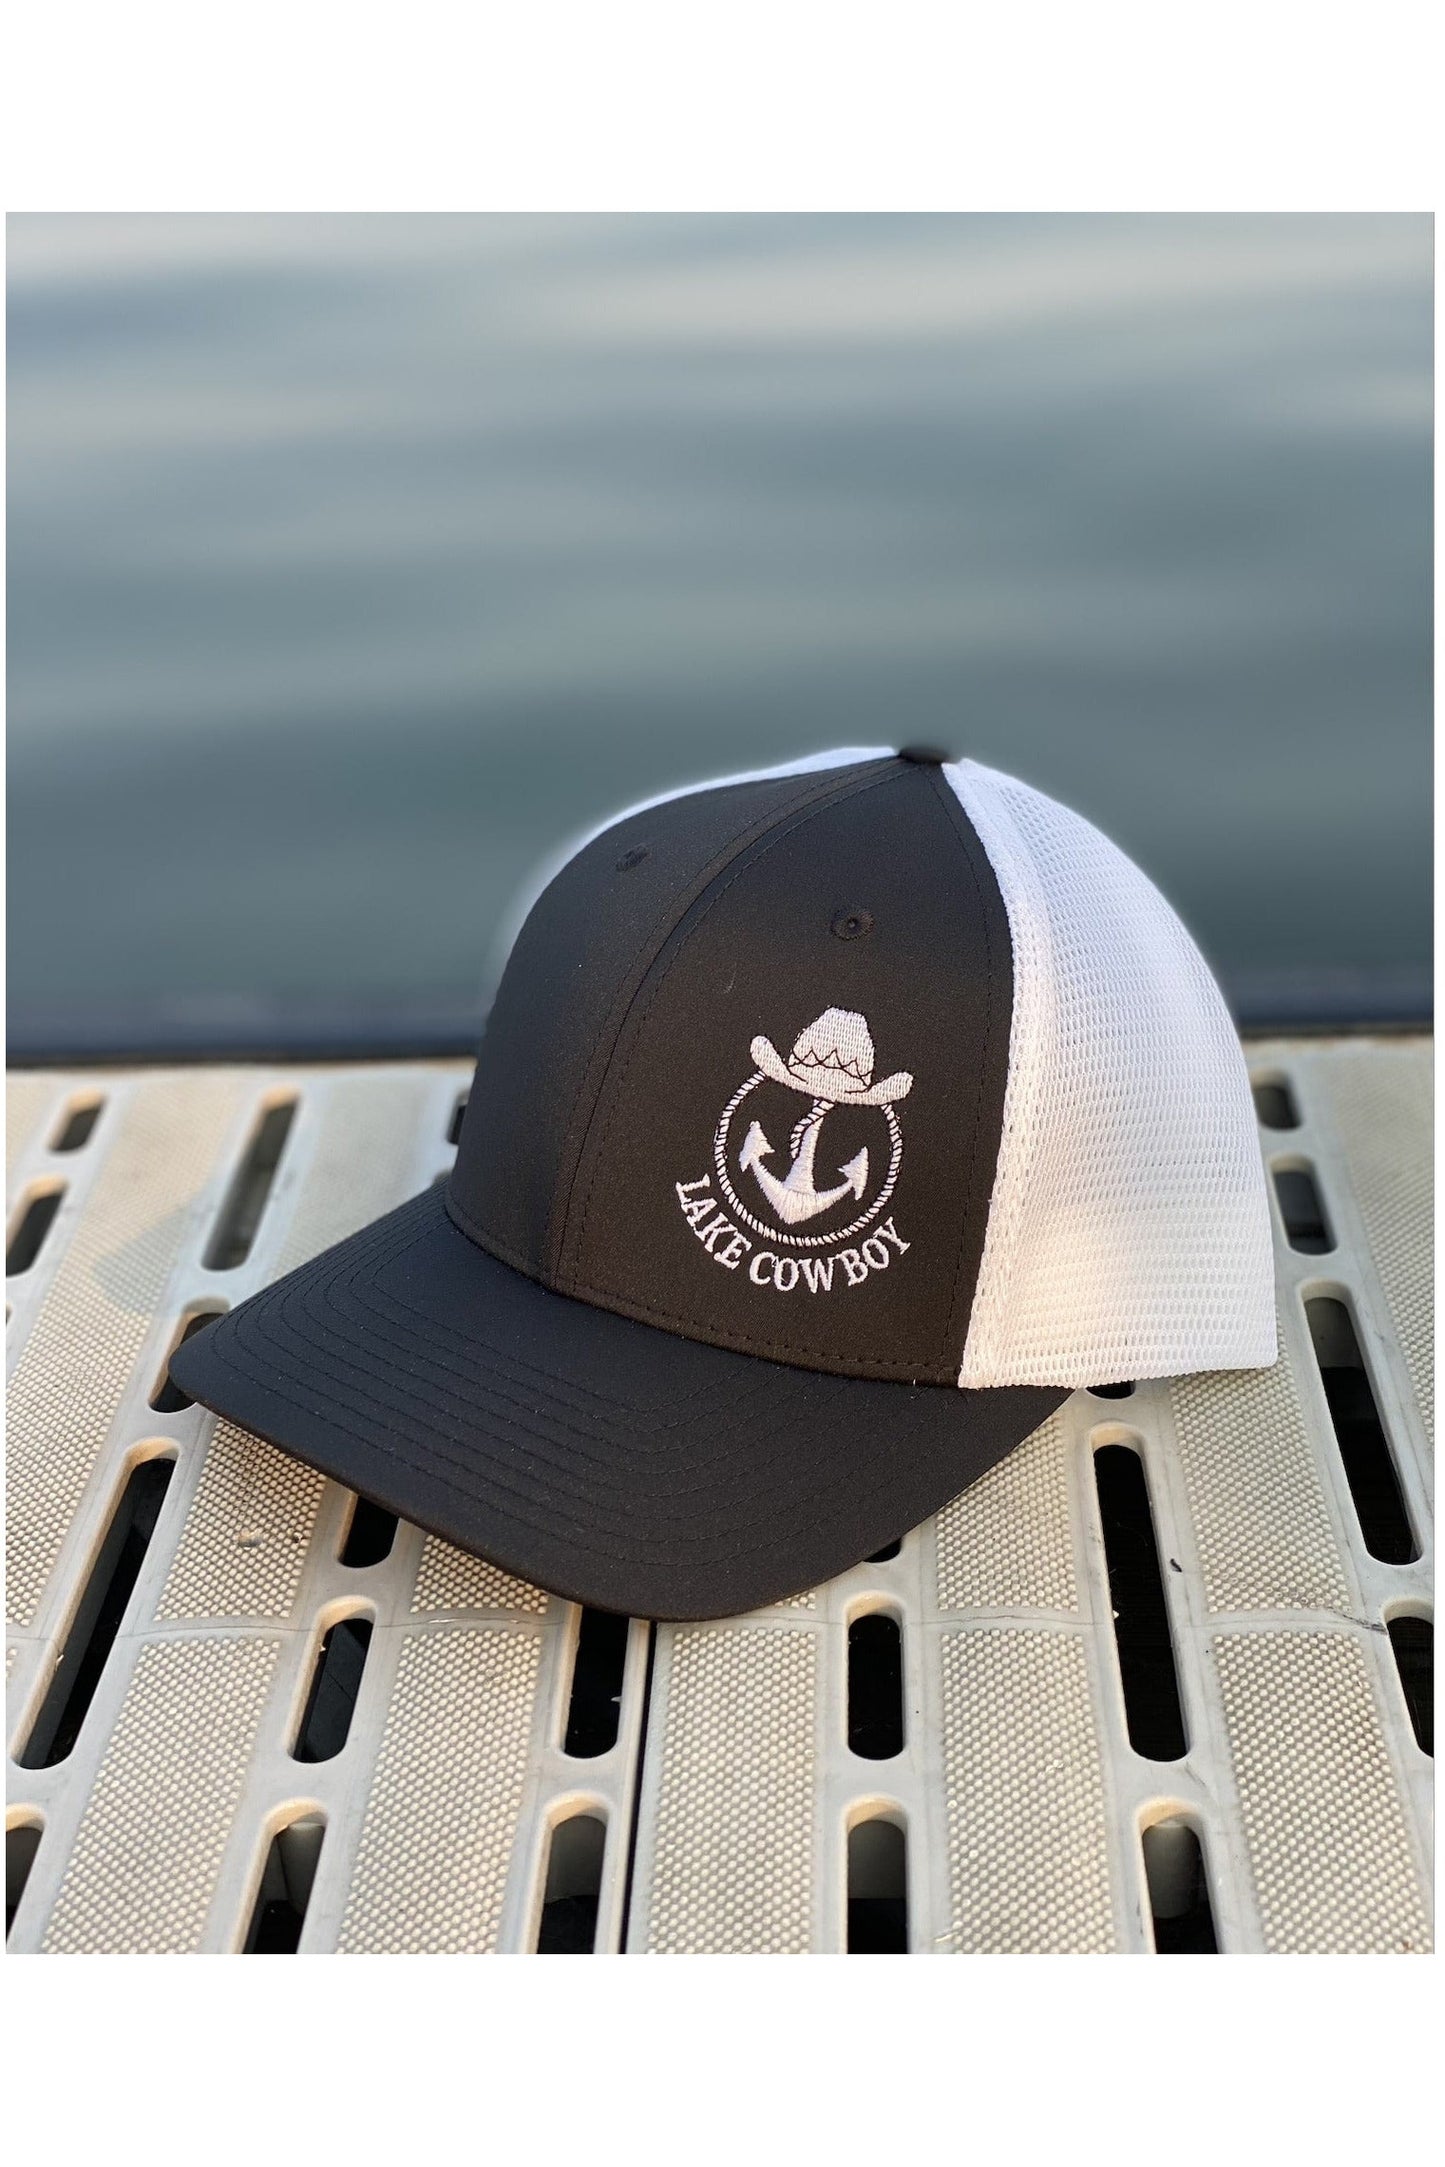 Photo of a Lake Cowboy Baseball Hat (Black & White) on a dock